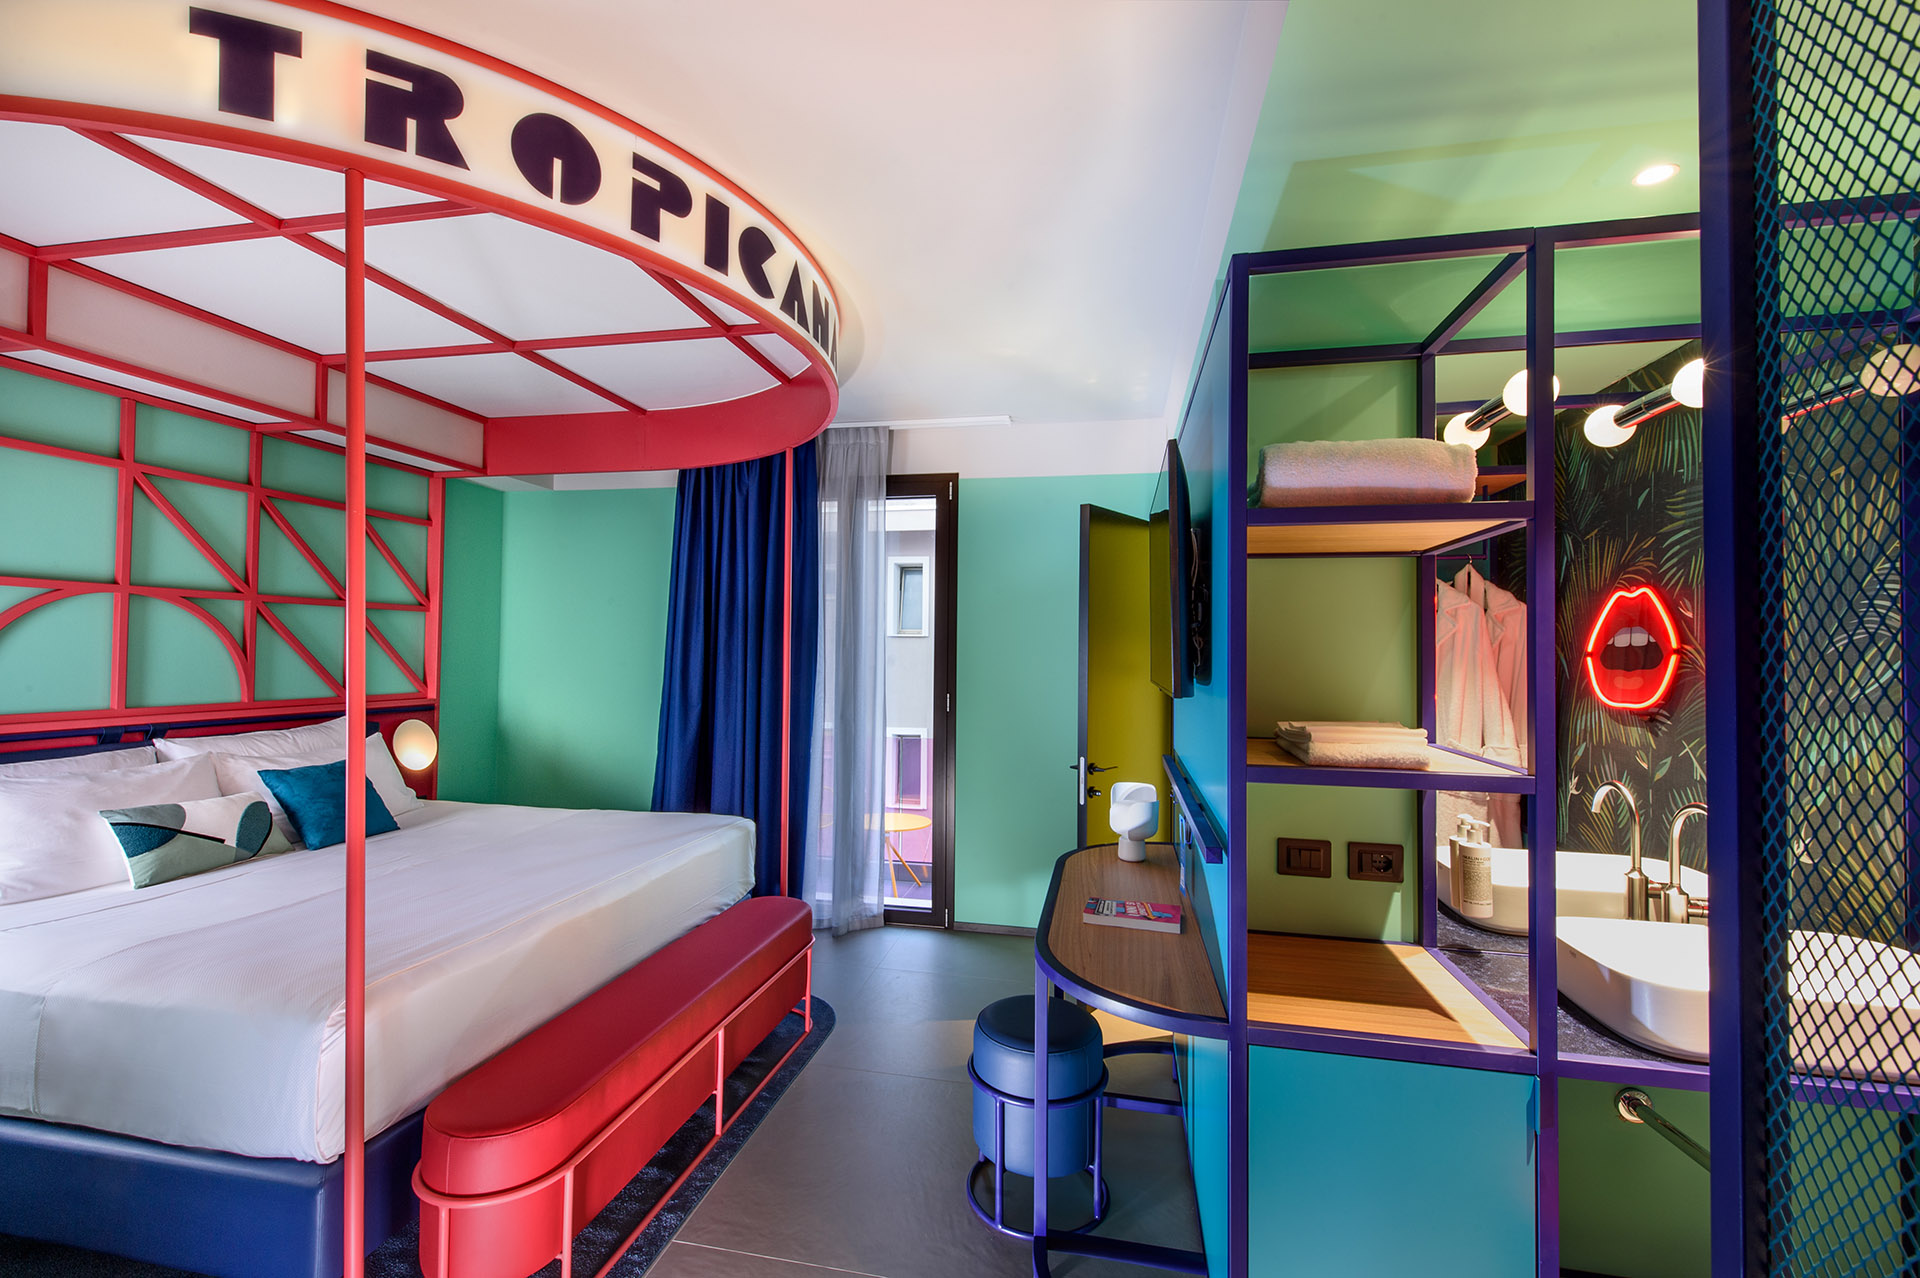 Arredi iconici, colori intensi e allestimento outdoor tropicale nella suite “Tropicana Club” a Rimini